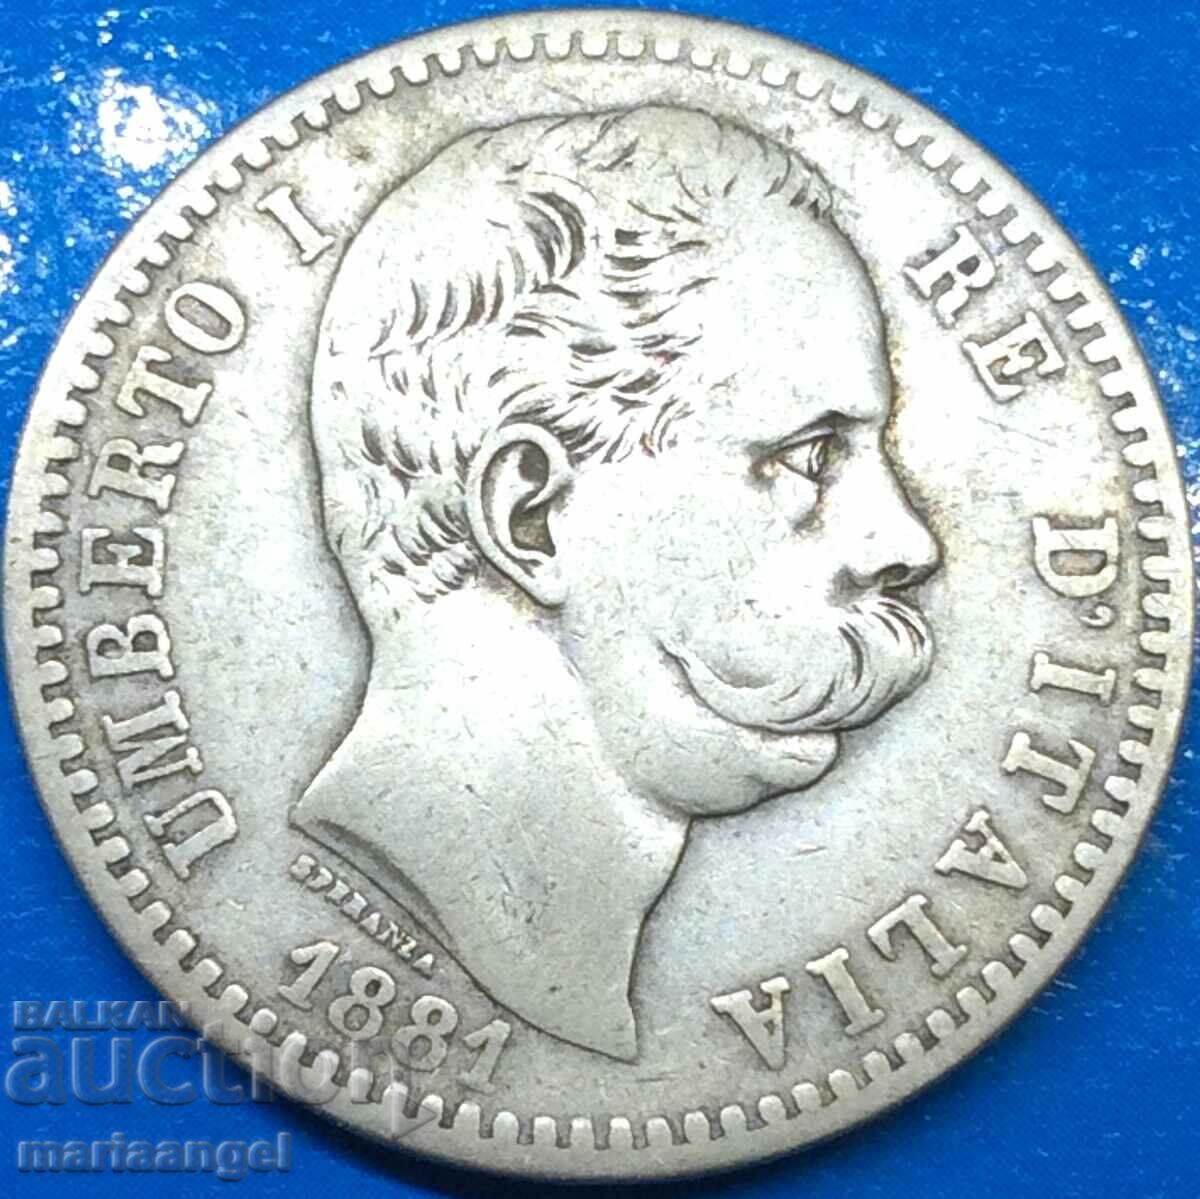 2 Lire 1881 Italy Umberto I Silver